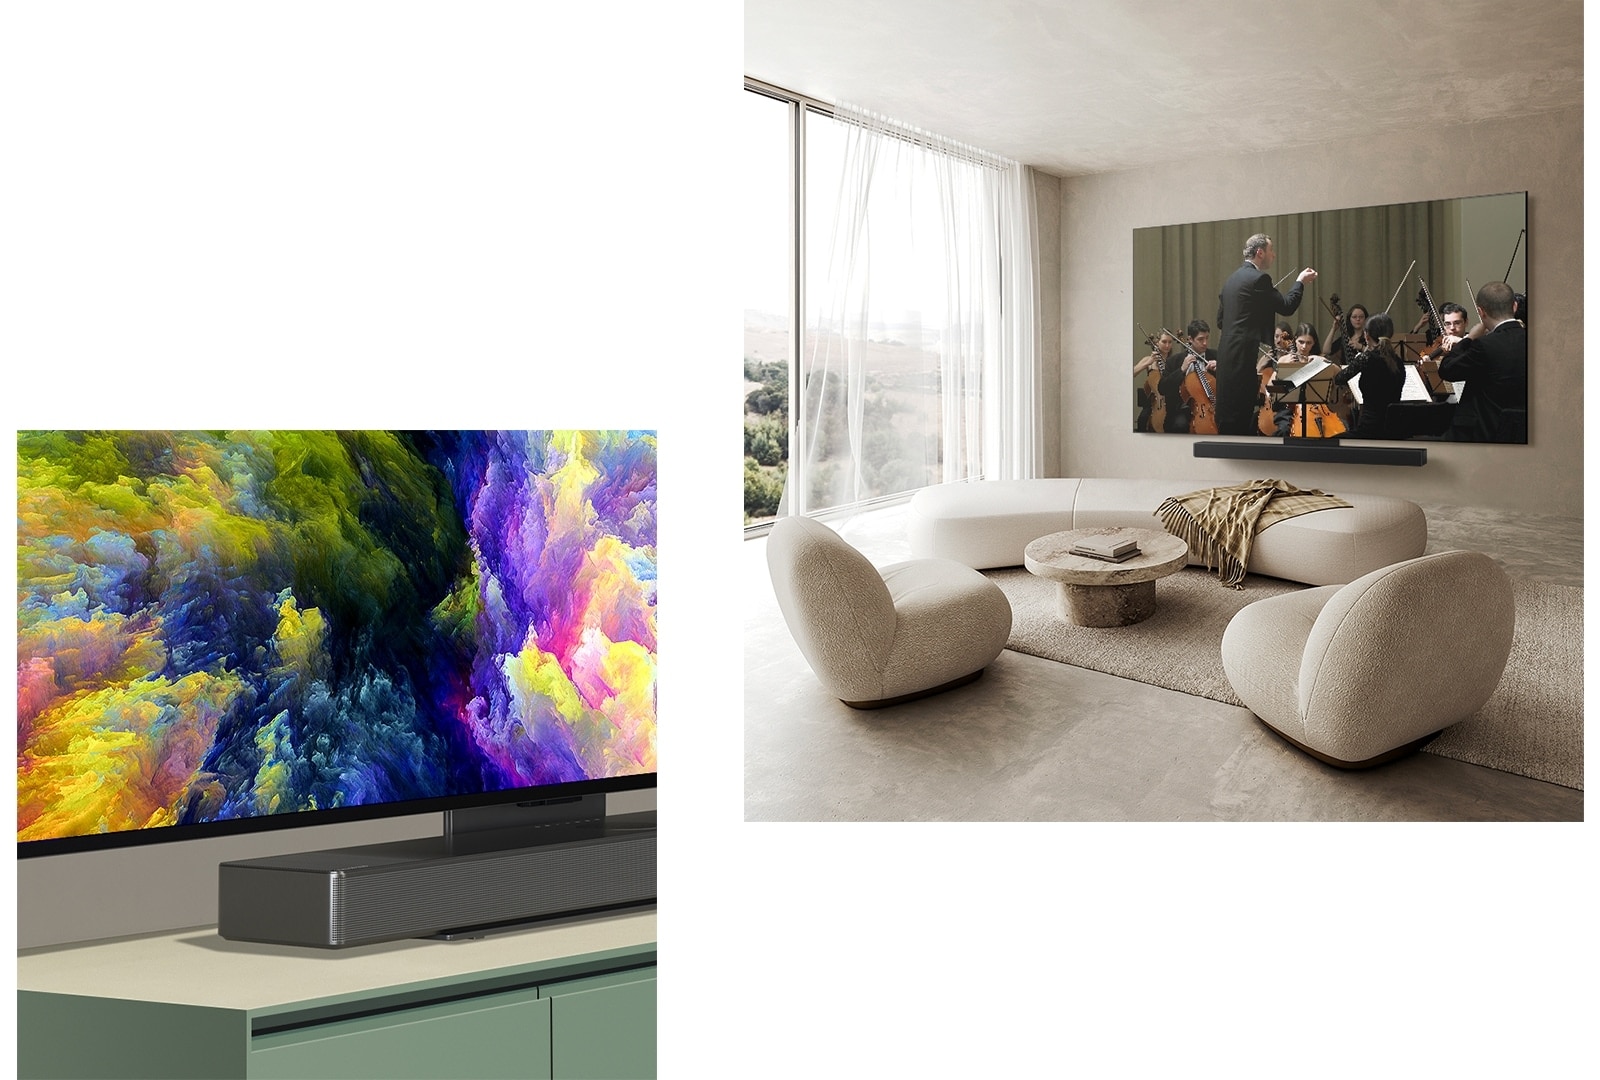 Zaslon OLED C4 s poševno perspektivo spodnjega kota televizorja LG OLED prikazuje abstraktno umetniško predstavitev gozda. Televizor je povezan z zvočnikom LG Soundbar s pomočjo nosilca Synergy in na zaslonu je prikazana abstraktna umetniška predstavitev gozda. LG OLED TV, OLED C4 in LG Soundbar v čistem bivalnem prostoru na steni z nastopom orkestra na zaslonu.